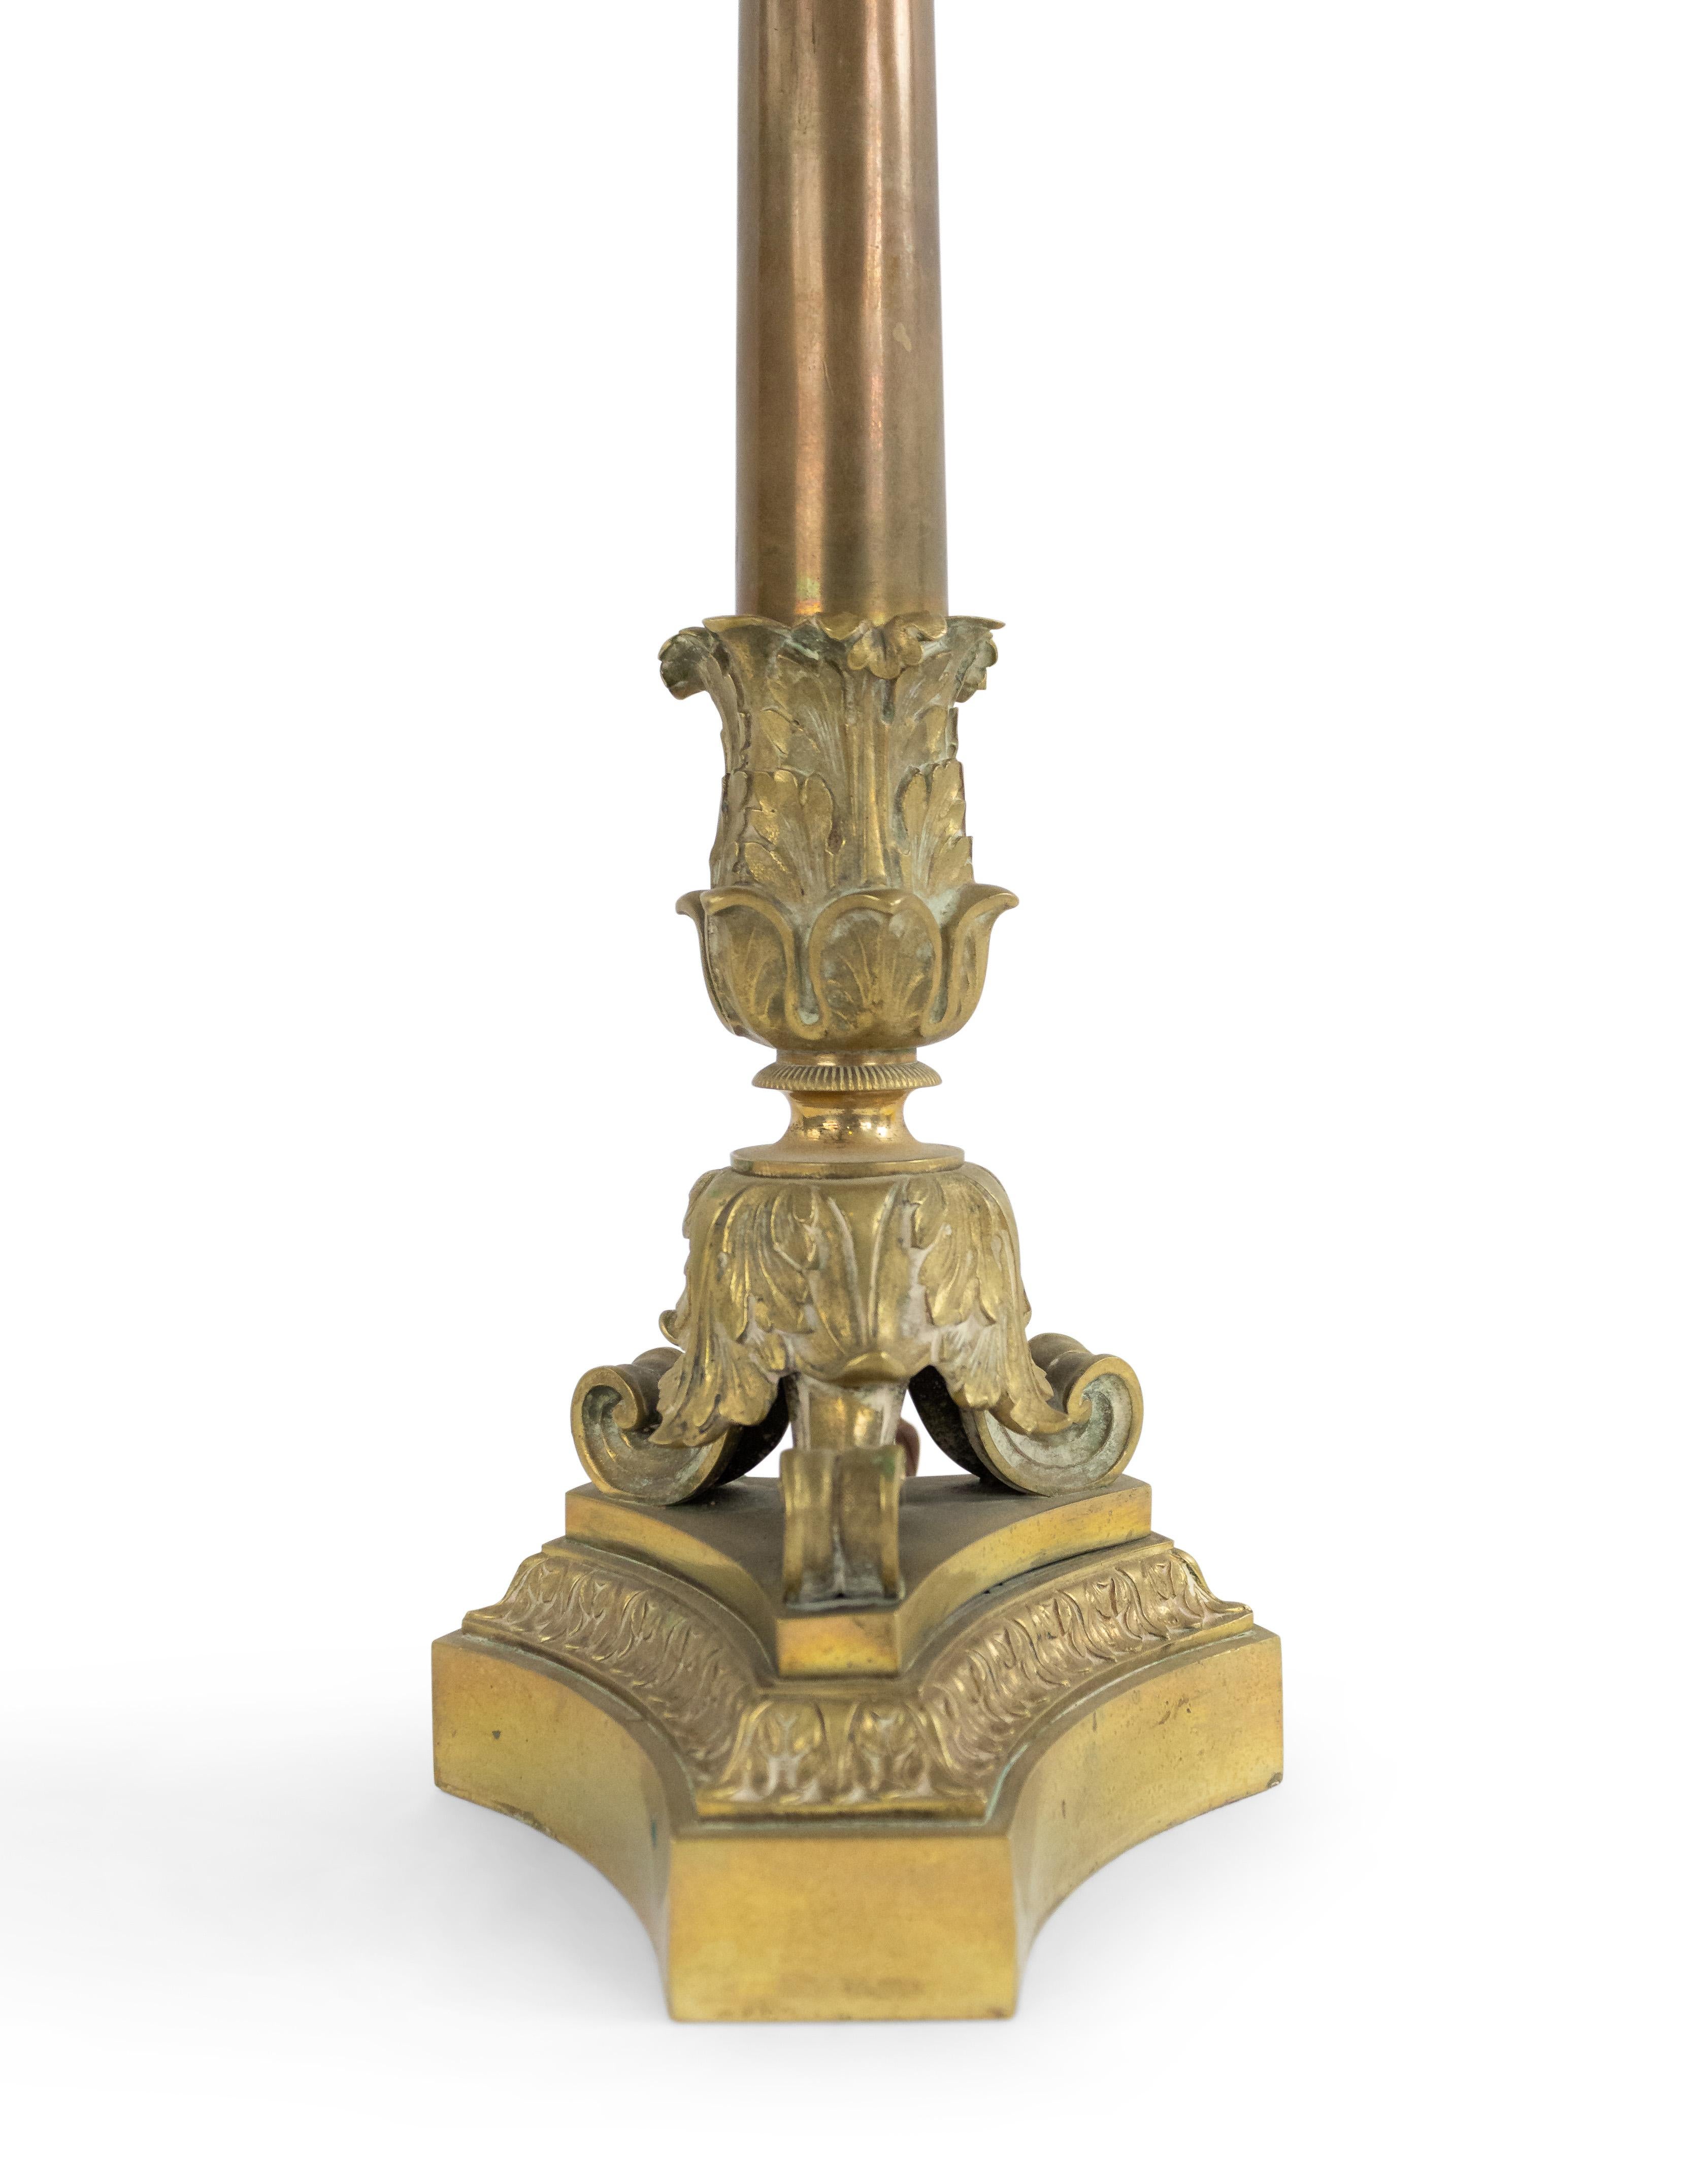 Chandelier à 3 bras de style Louis XVI français du 19ème siècle avec une colonne sur une base triangulaire avec des pieds griffes maintenant câblé comme une lampe.